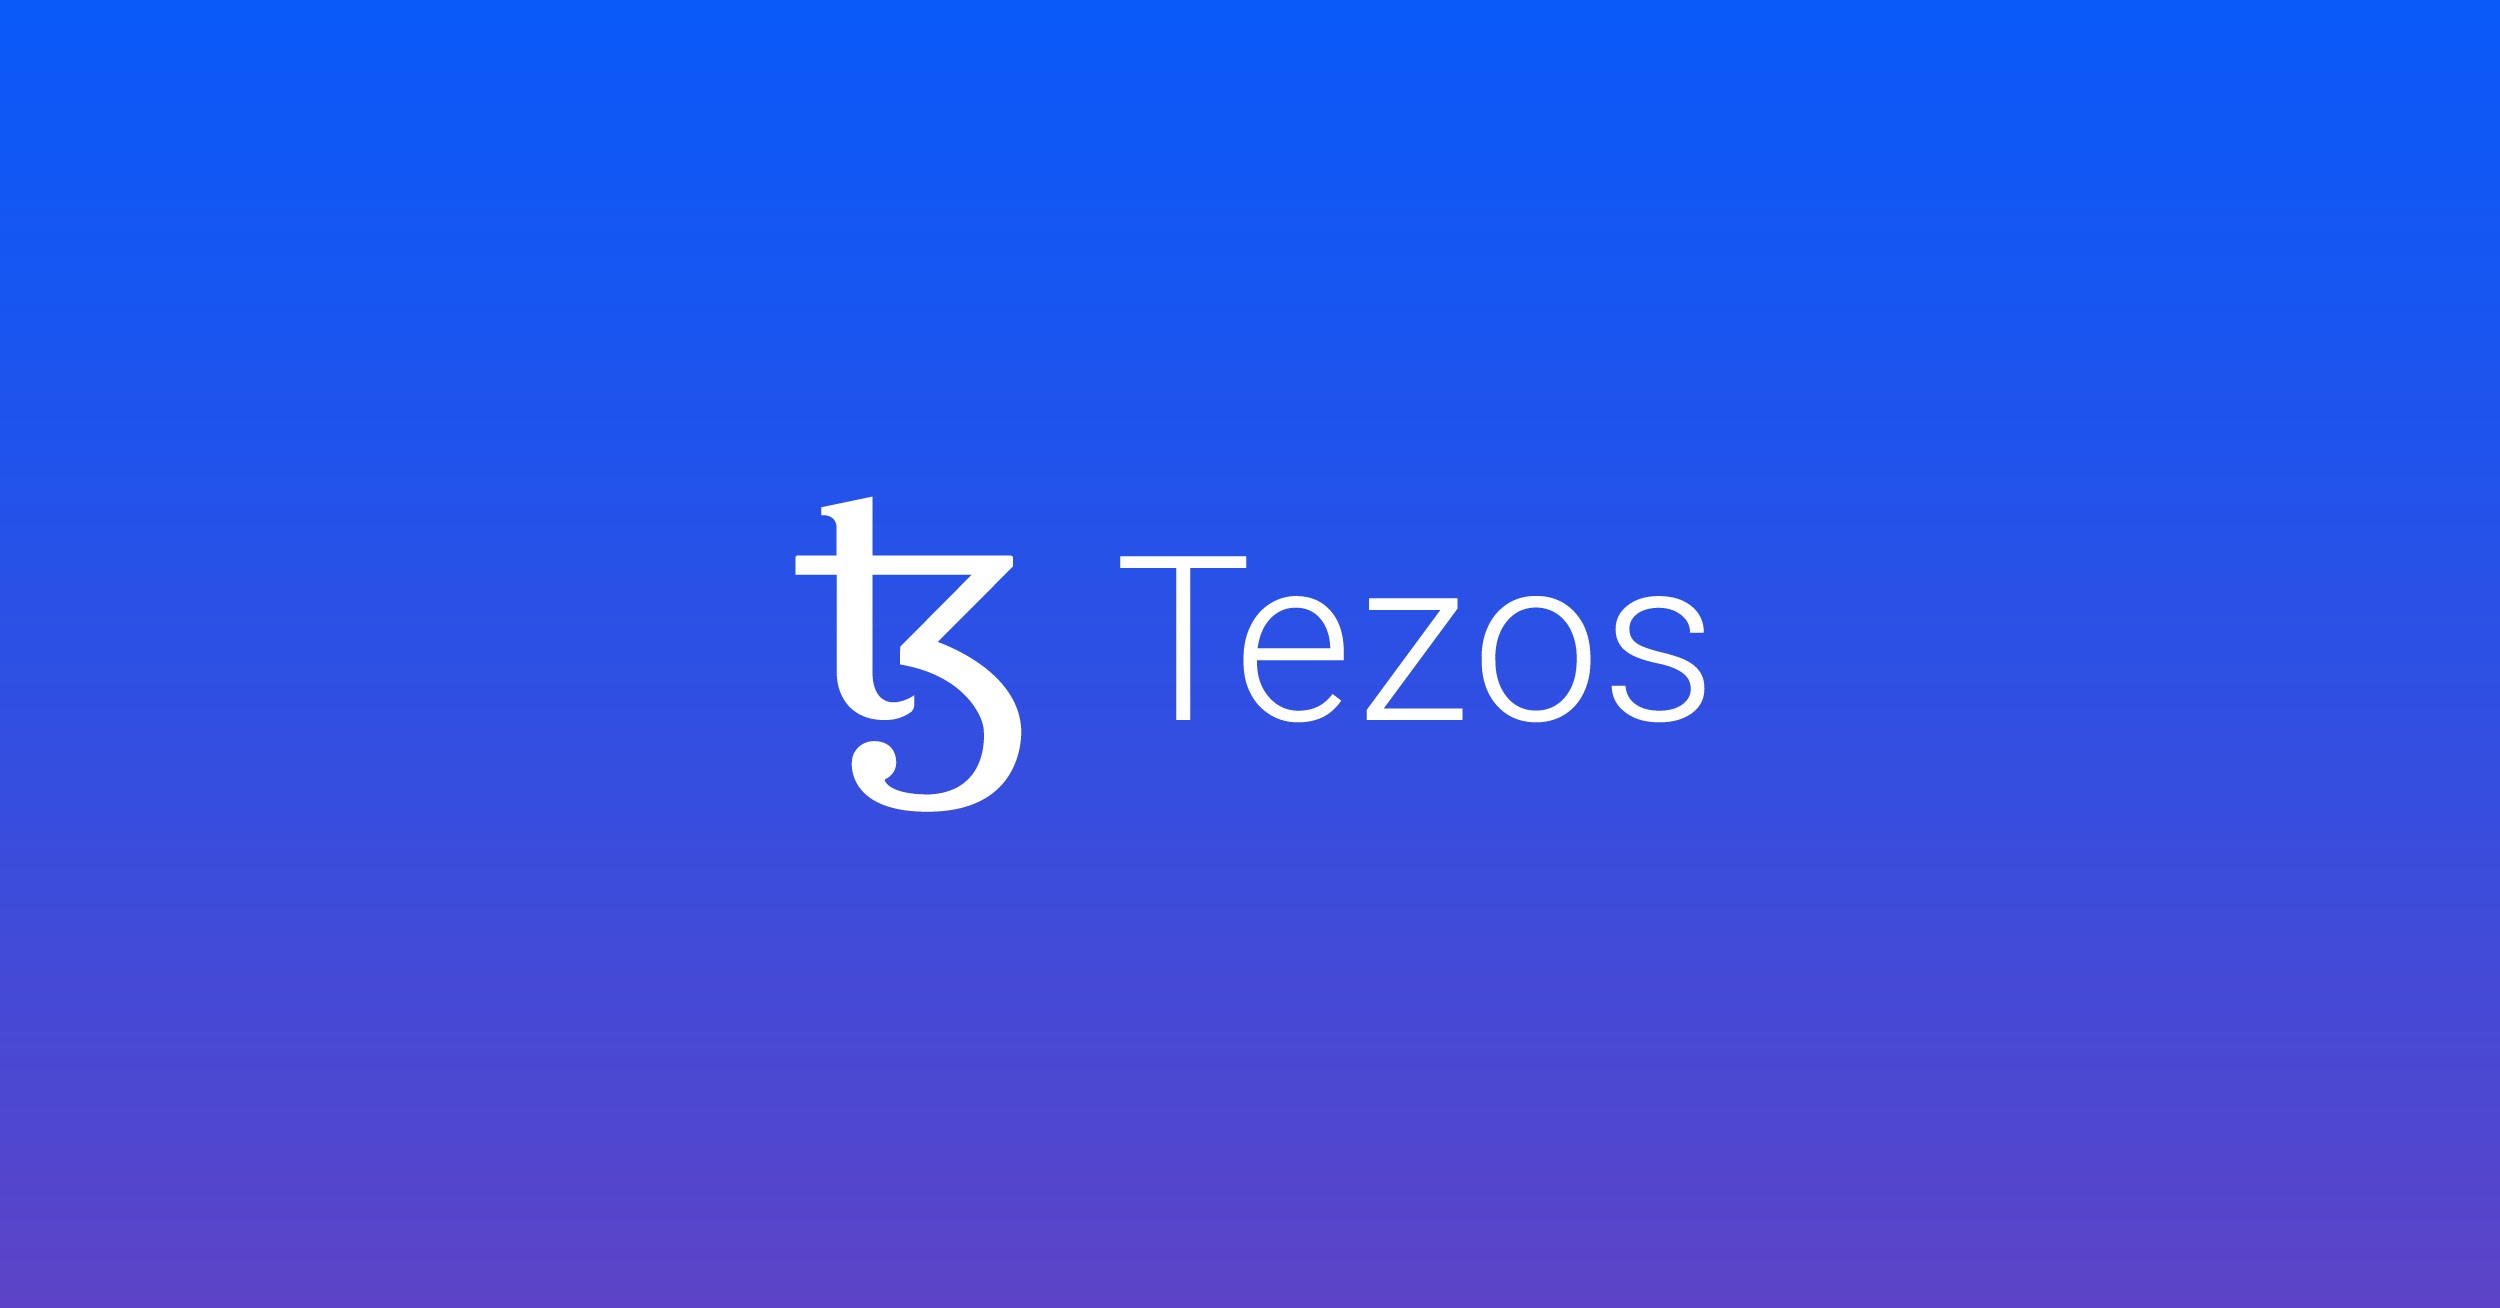 XTZetc – ETC Group Physical Tezos (EXTZ ETC) levererar fysisk exponering mot Tezos Tez-kryptovaluta (Tez eller "XTZ") med säkerheten och likviditeten för en börshandlad produkt